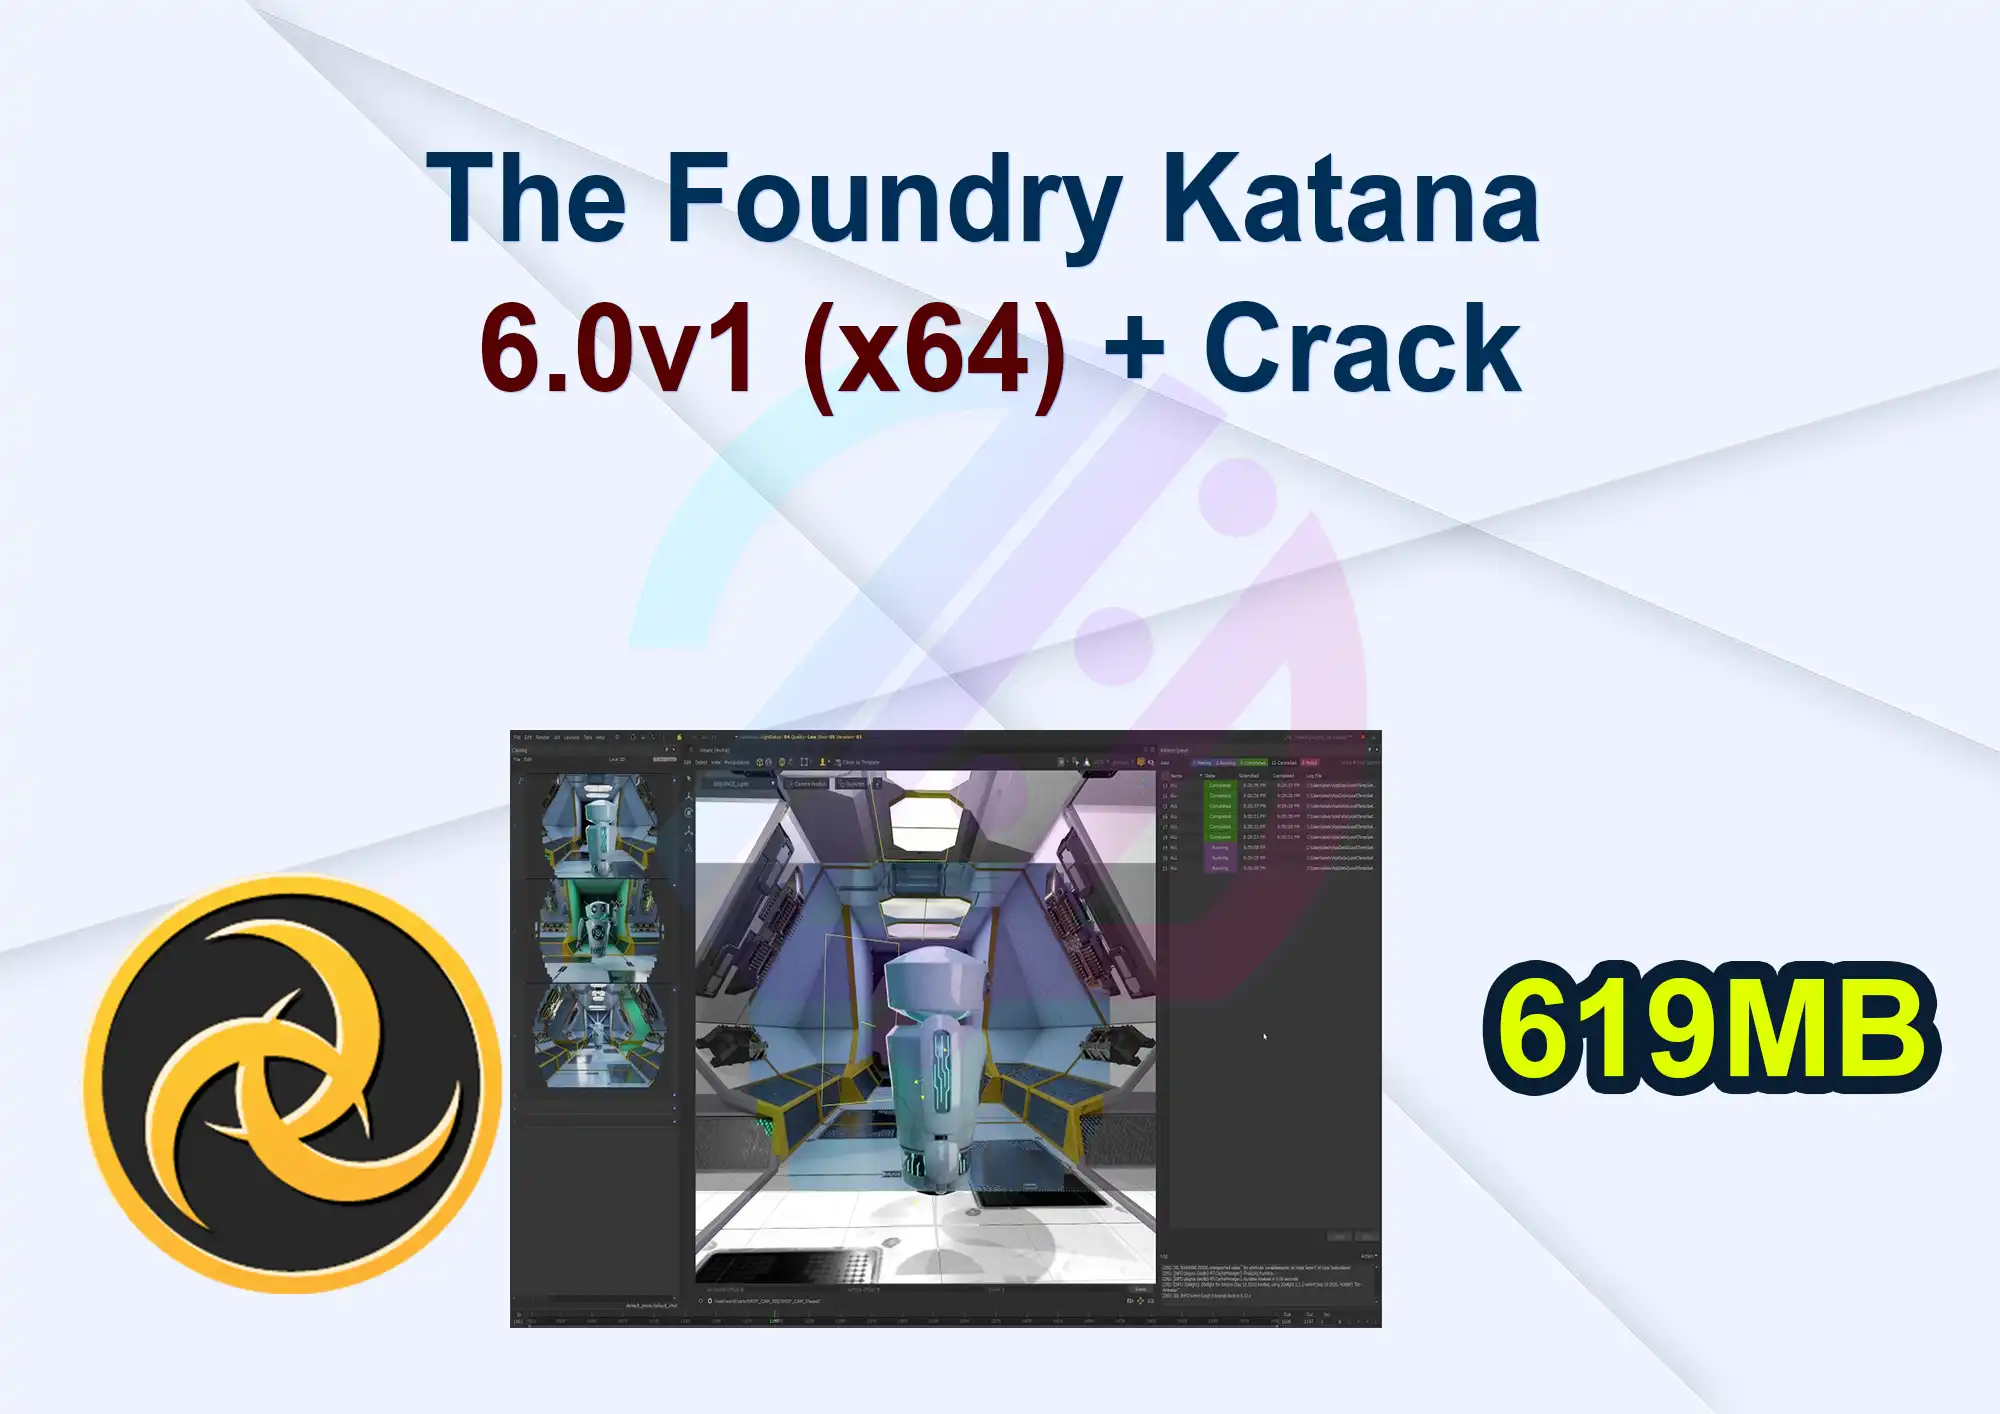 The Foundry Katana 6.0v1 (x64) + Crack